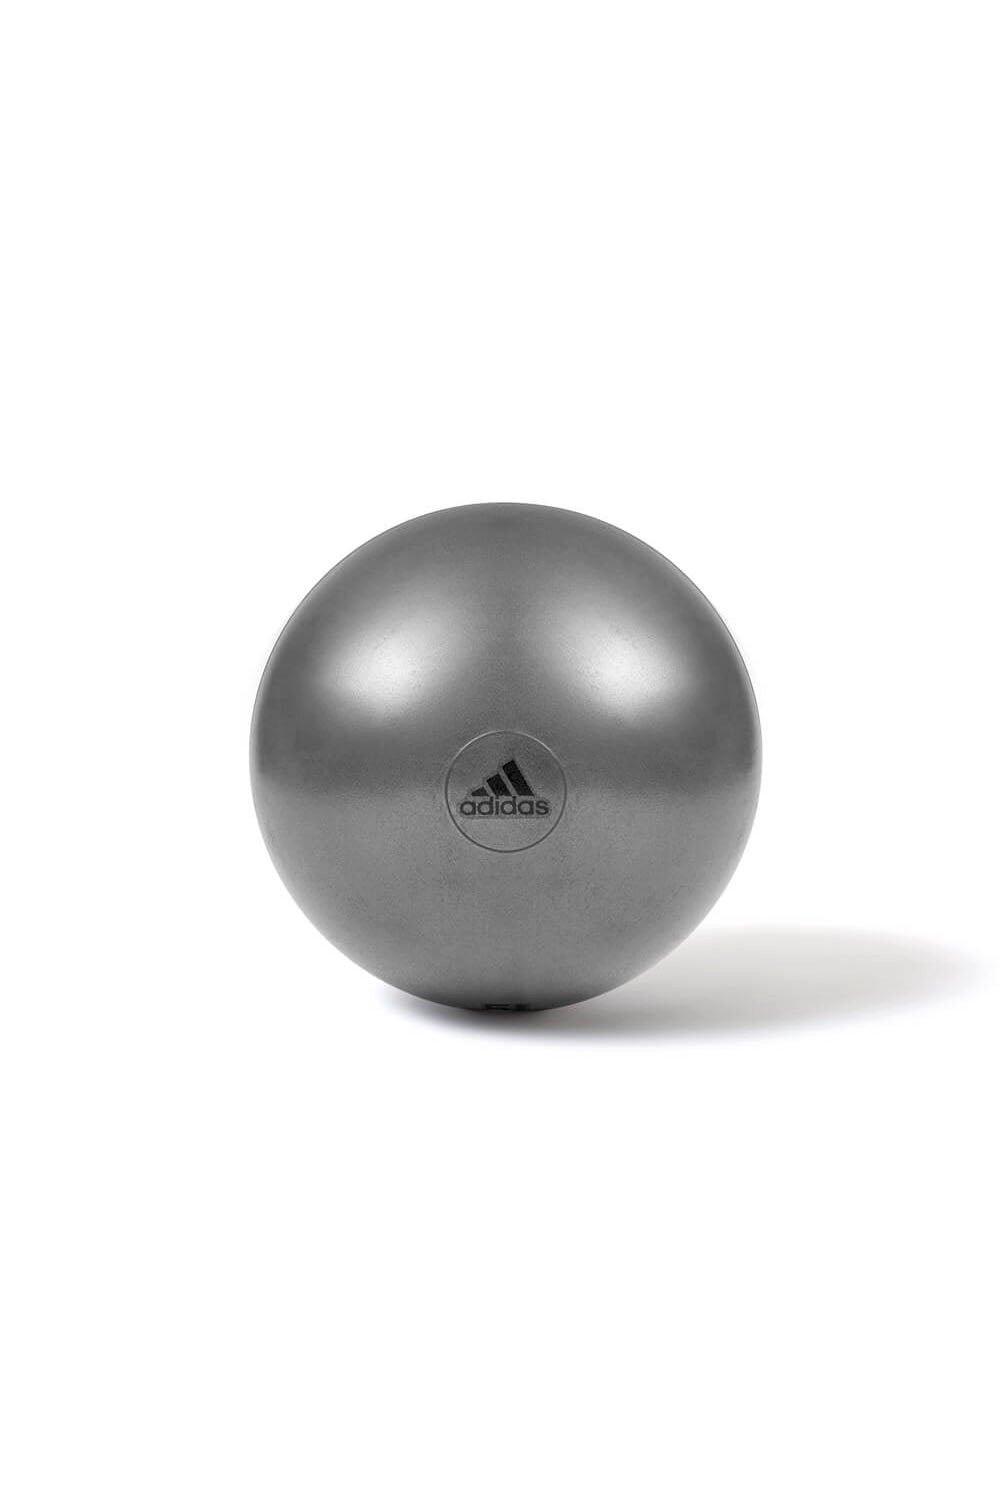 adidas Gym Balance Ball, Grey, 65cm